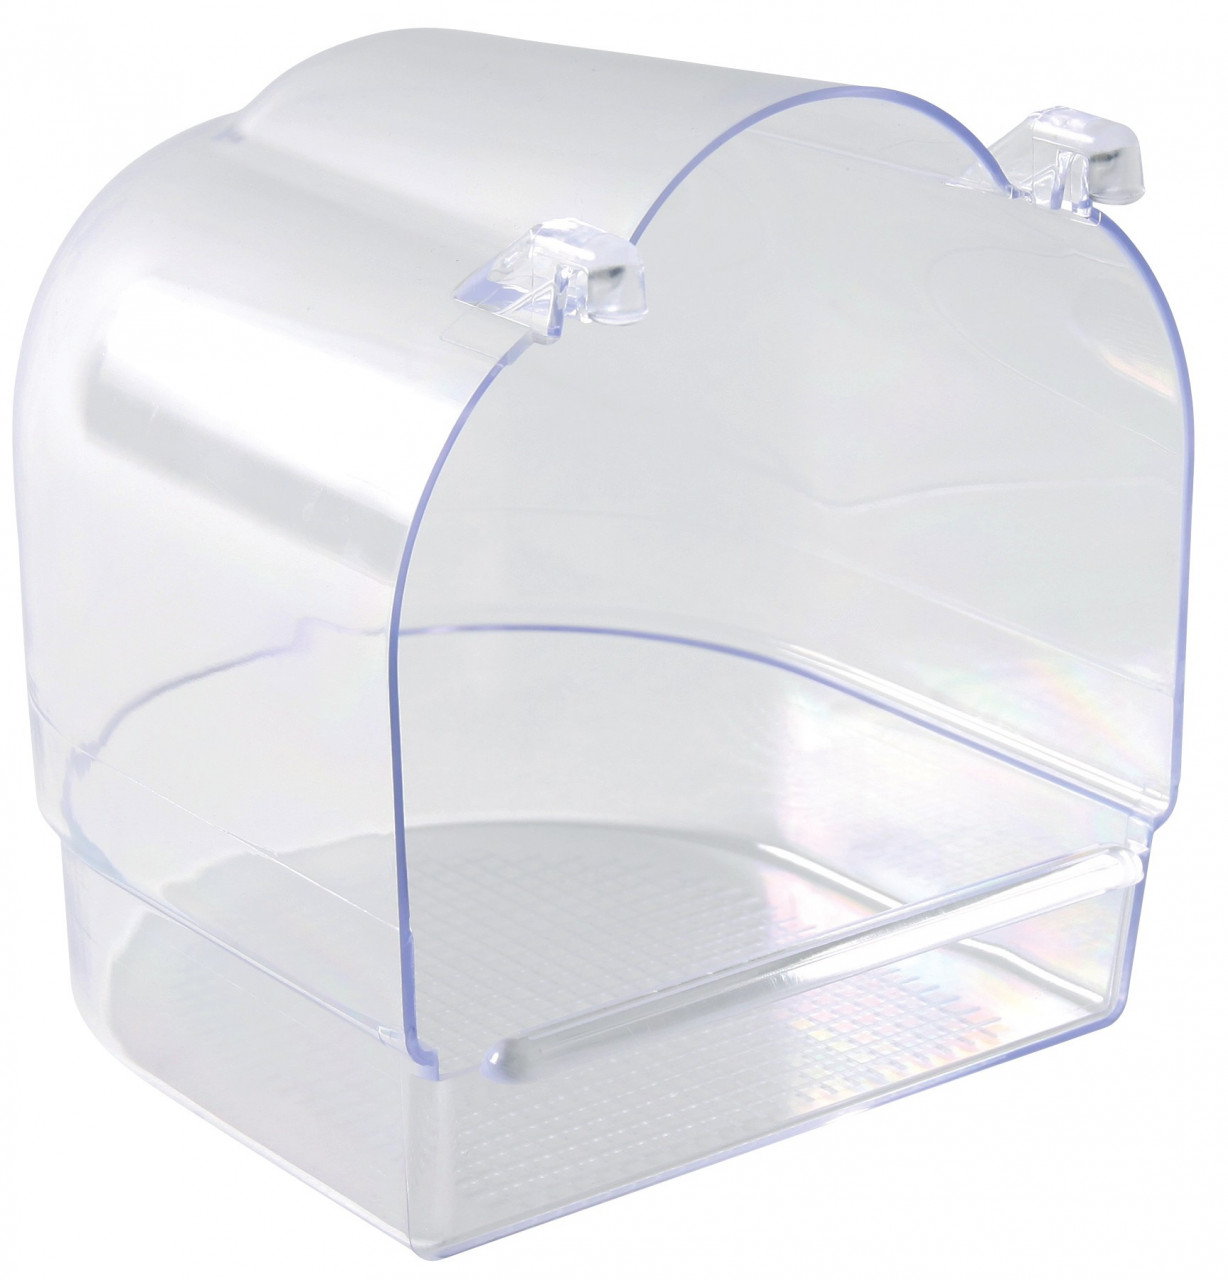 Cadita Plastic Acoperit Transparent 13x12x13 cm 5402